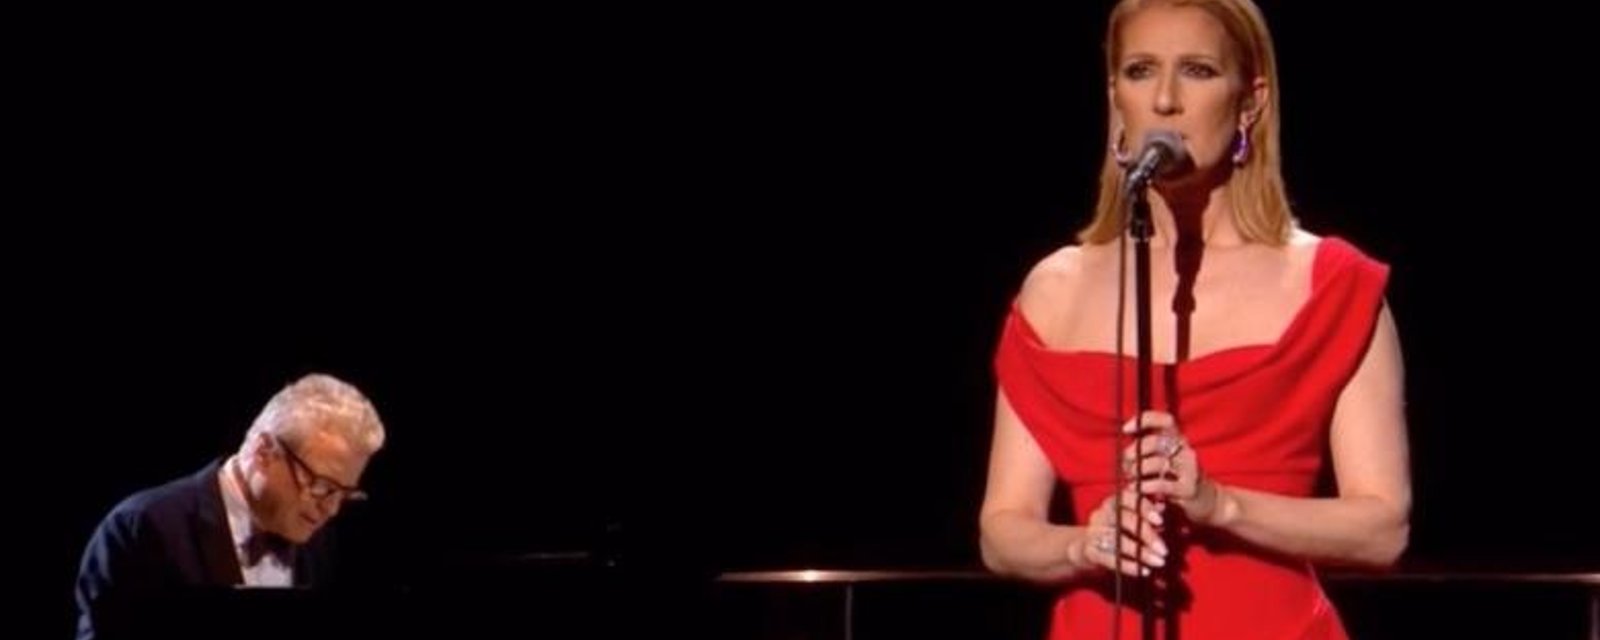 La performance éblouissante de Céline Dion en soutient aux victimes du cancer